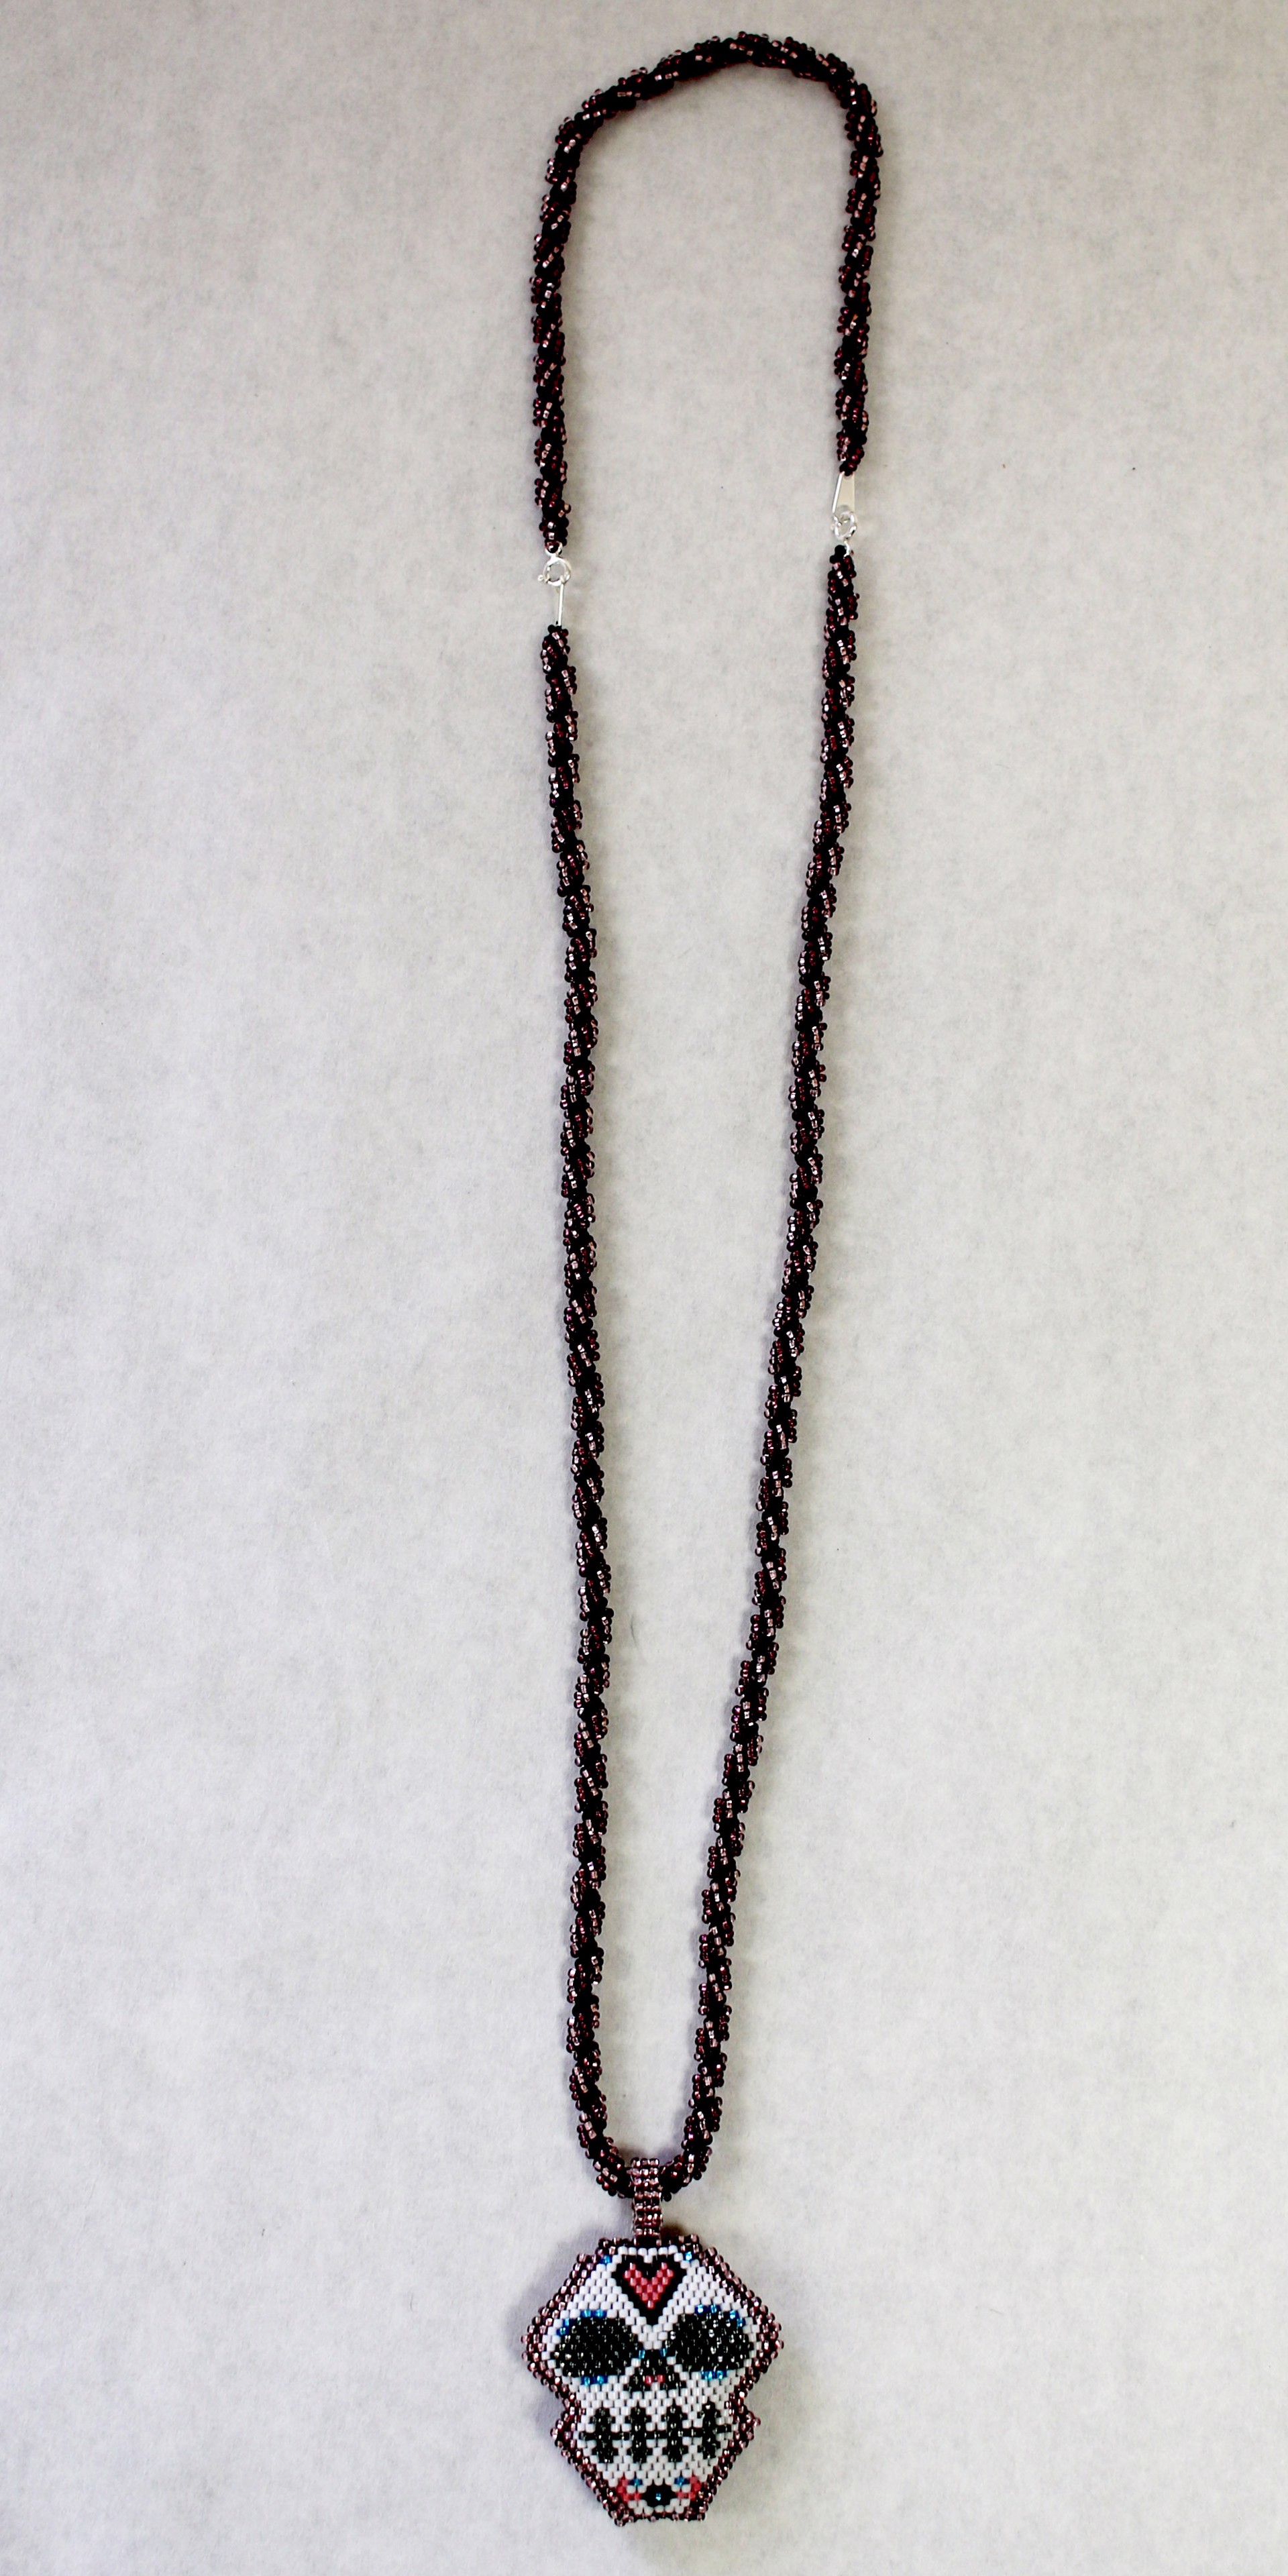 Santa Muerte Spiral Necklace & Bracelet by Julian "Good Medicine" Vigil